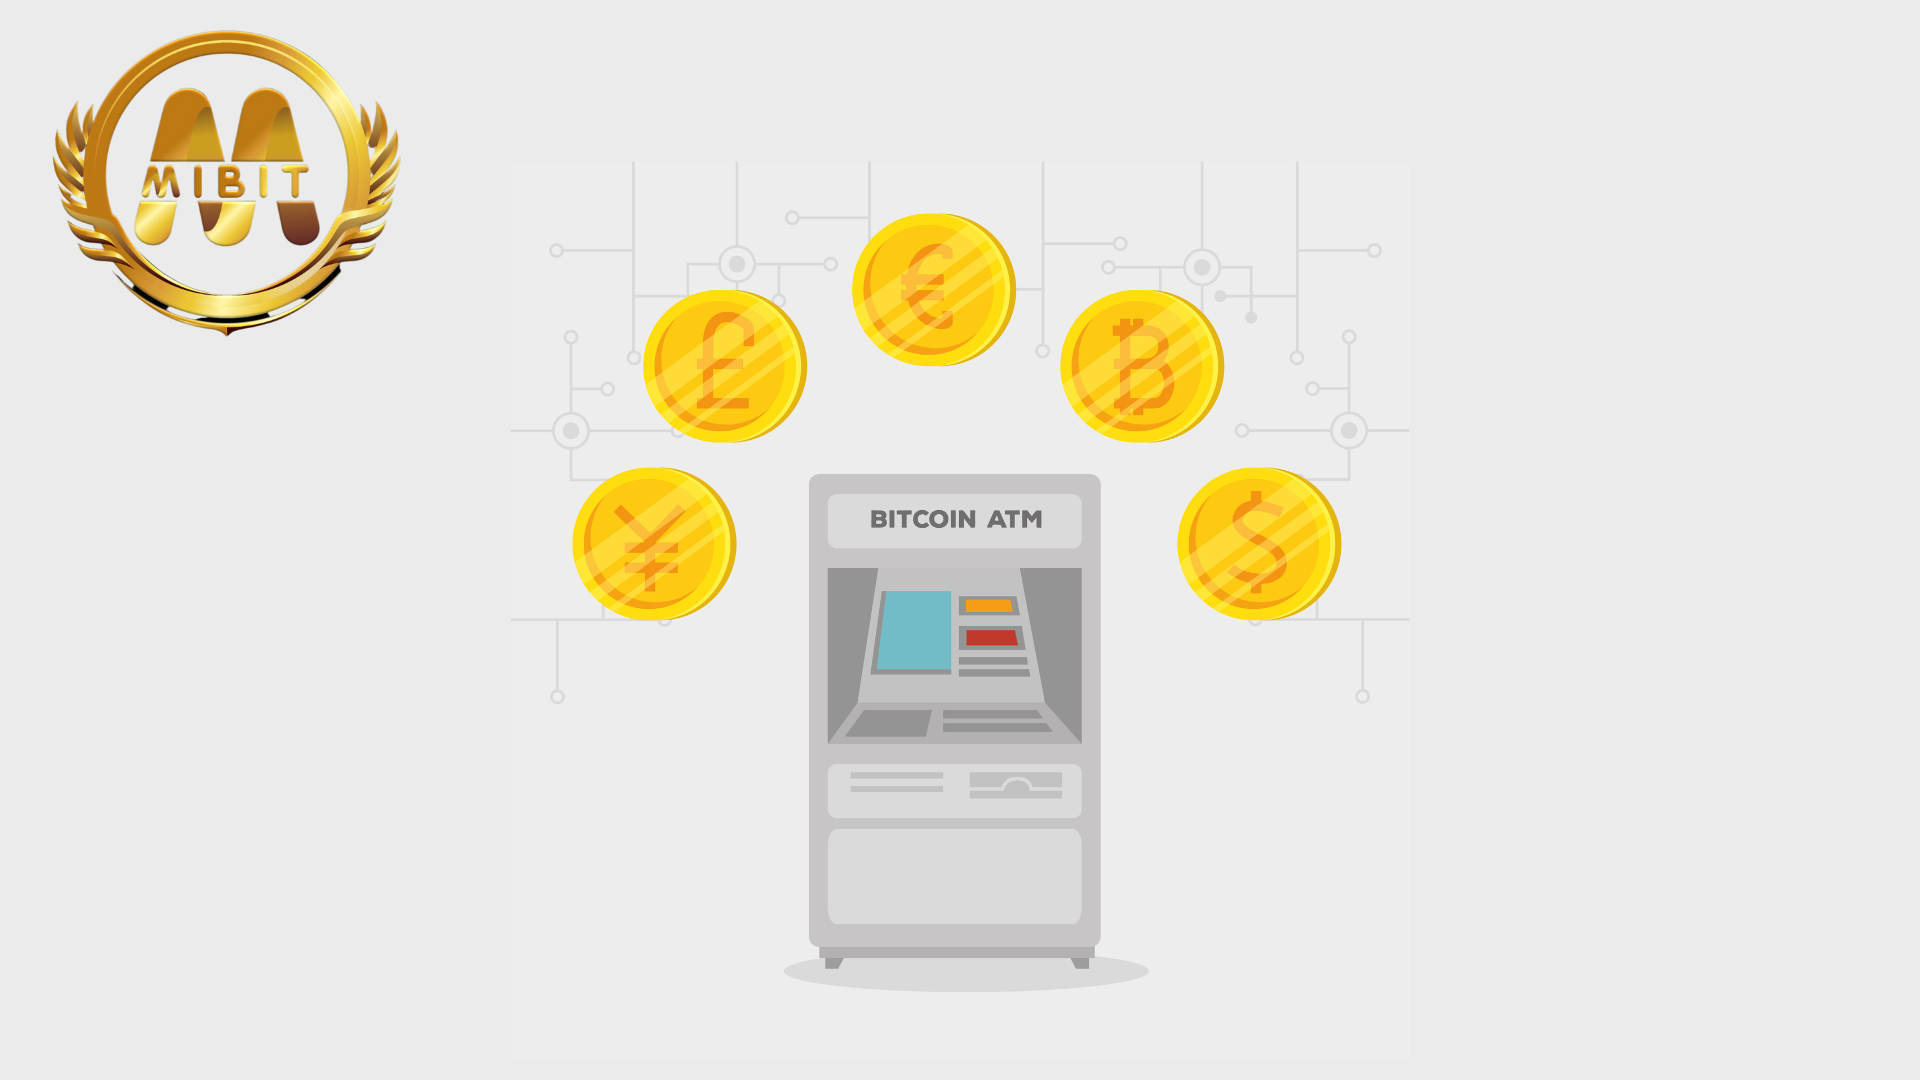 ATM Kripto “Bitcoin Depot”, Siap Go Publik di Nasdaq Mulai 3 Juli